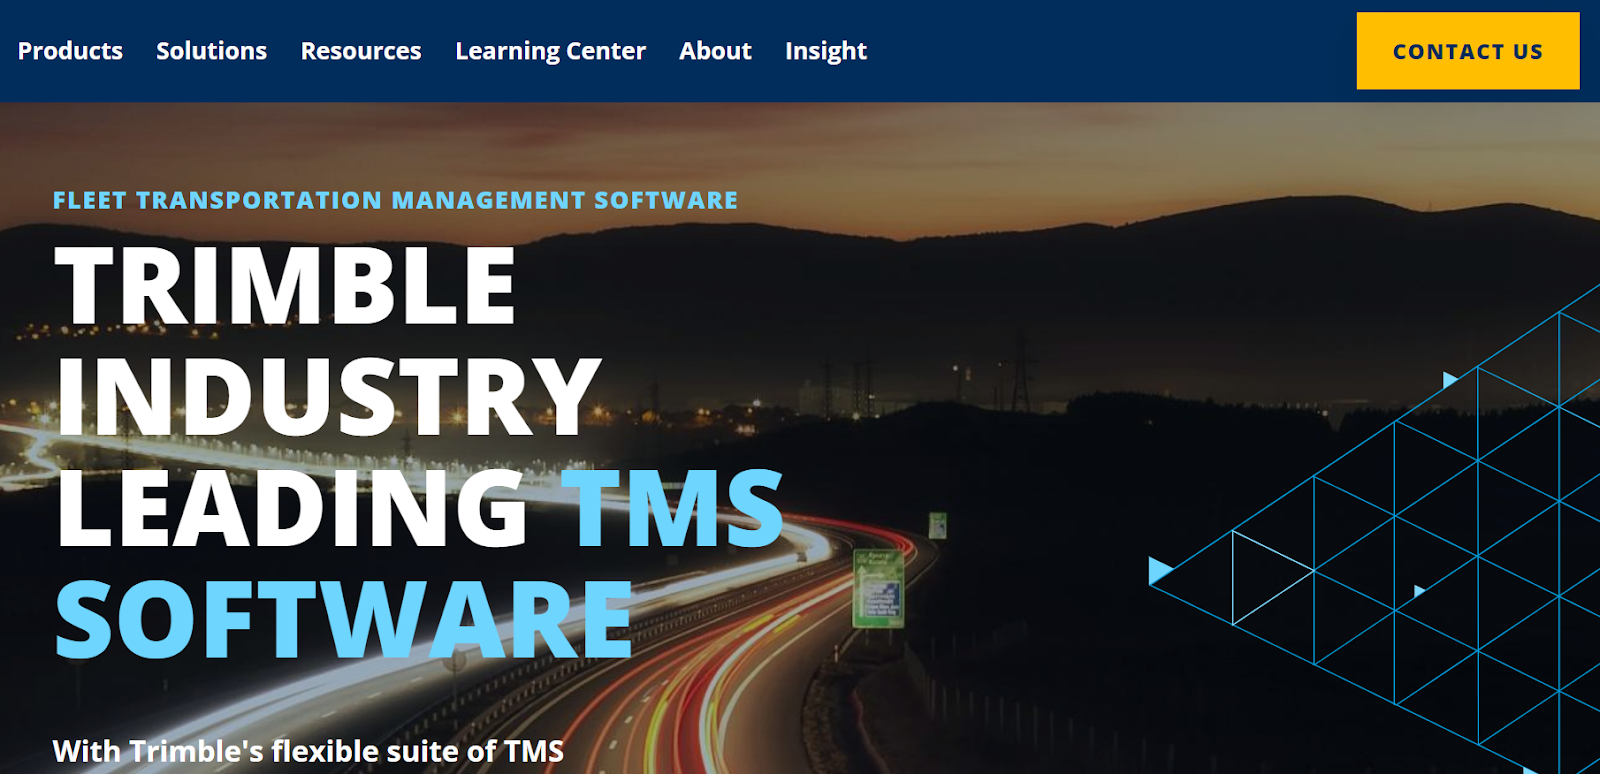 Trimble TMS webpage design